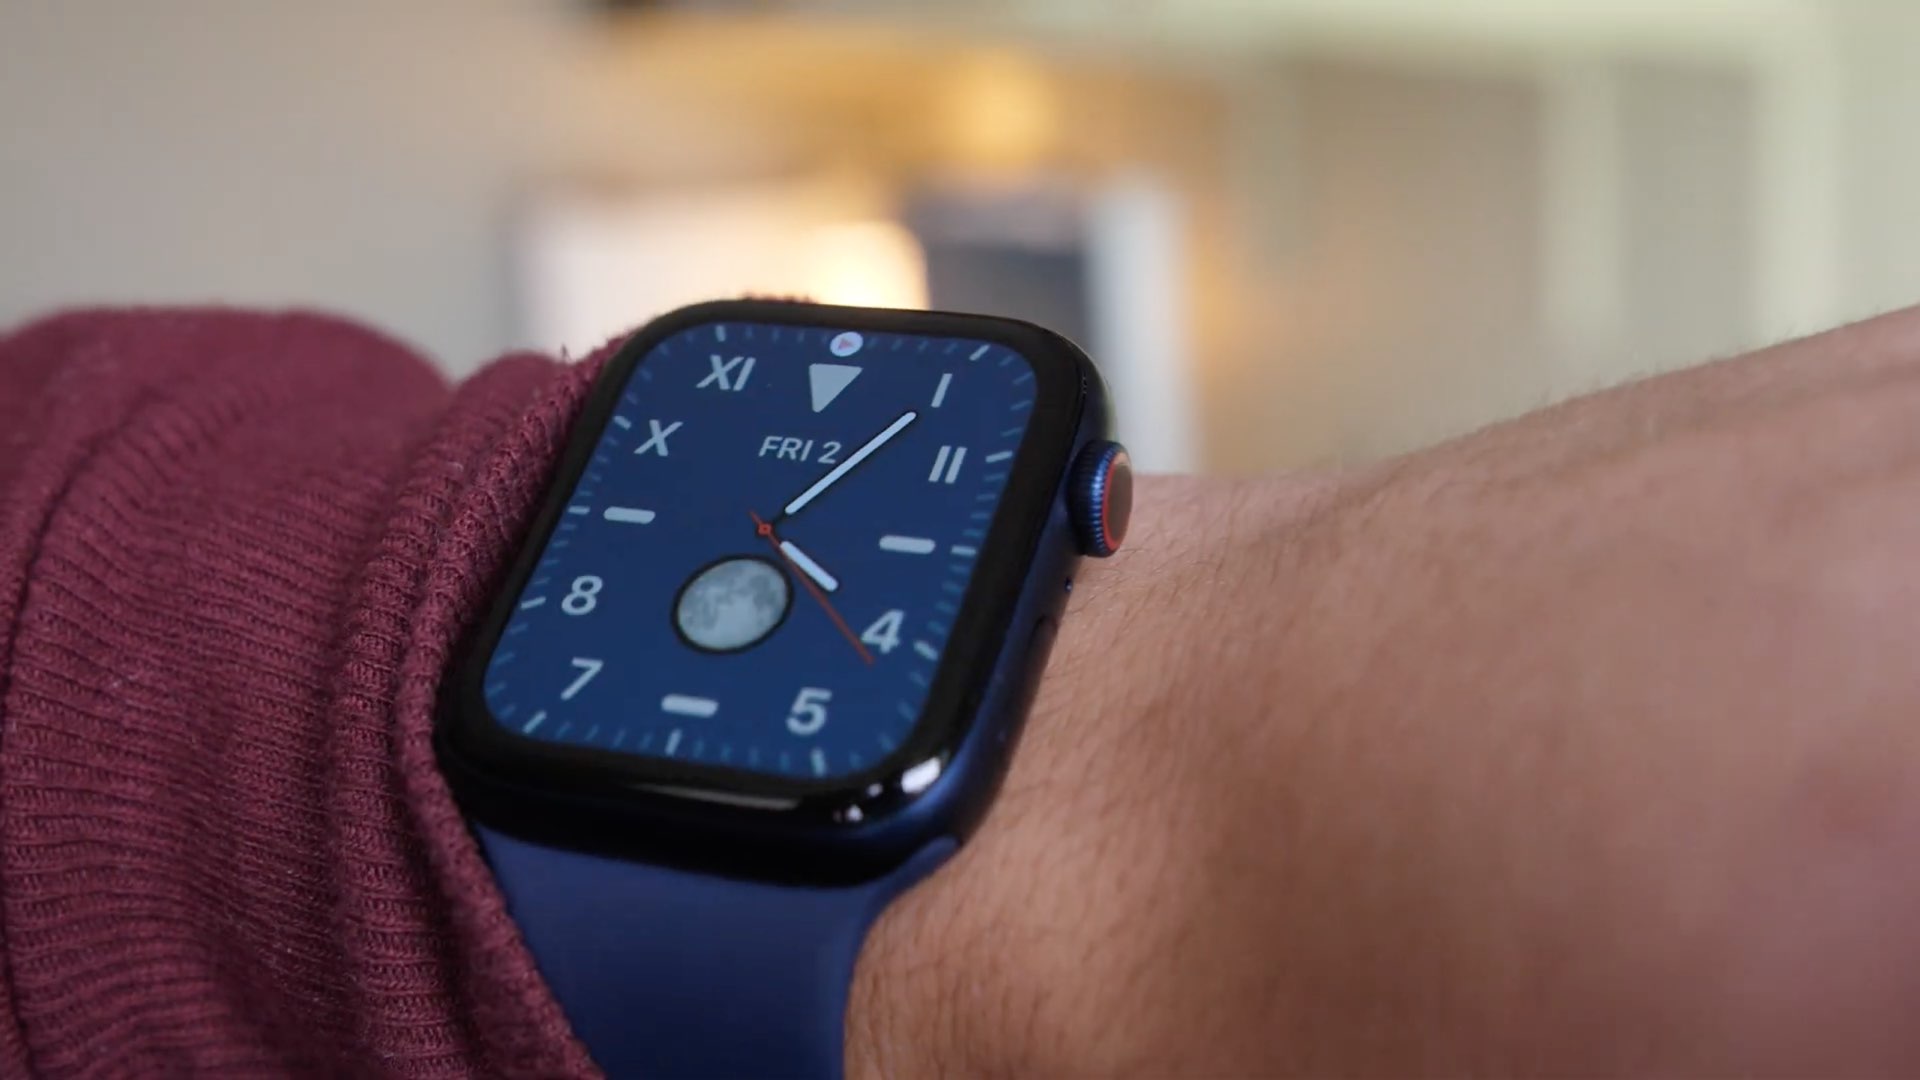 Blue Apple Watch on wrist